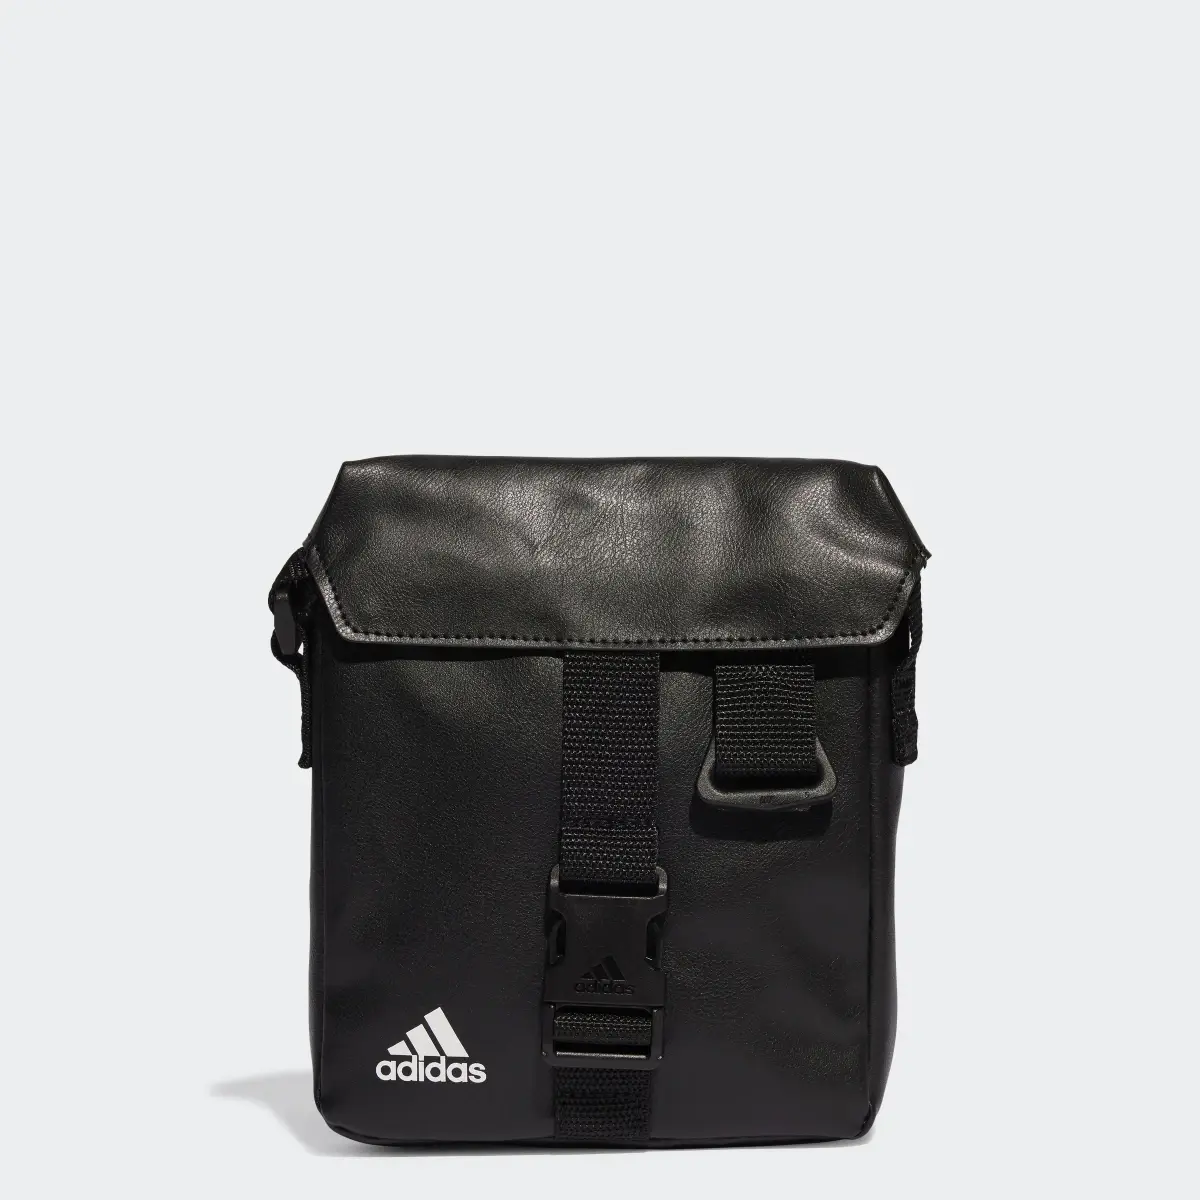 Adidas Essentials Small Bag. 1